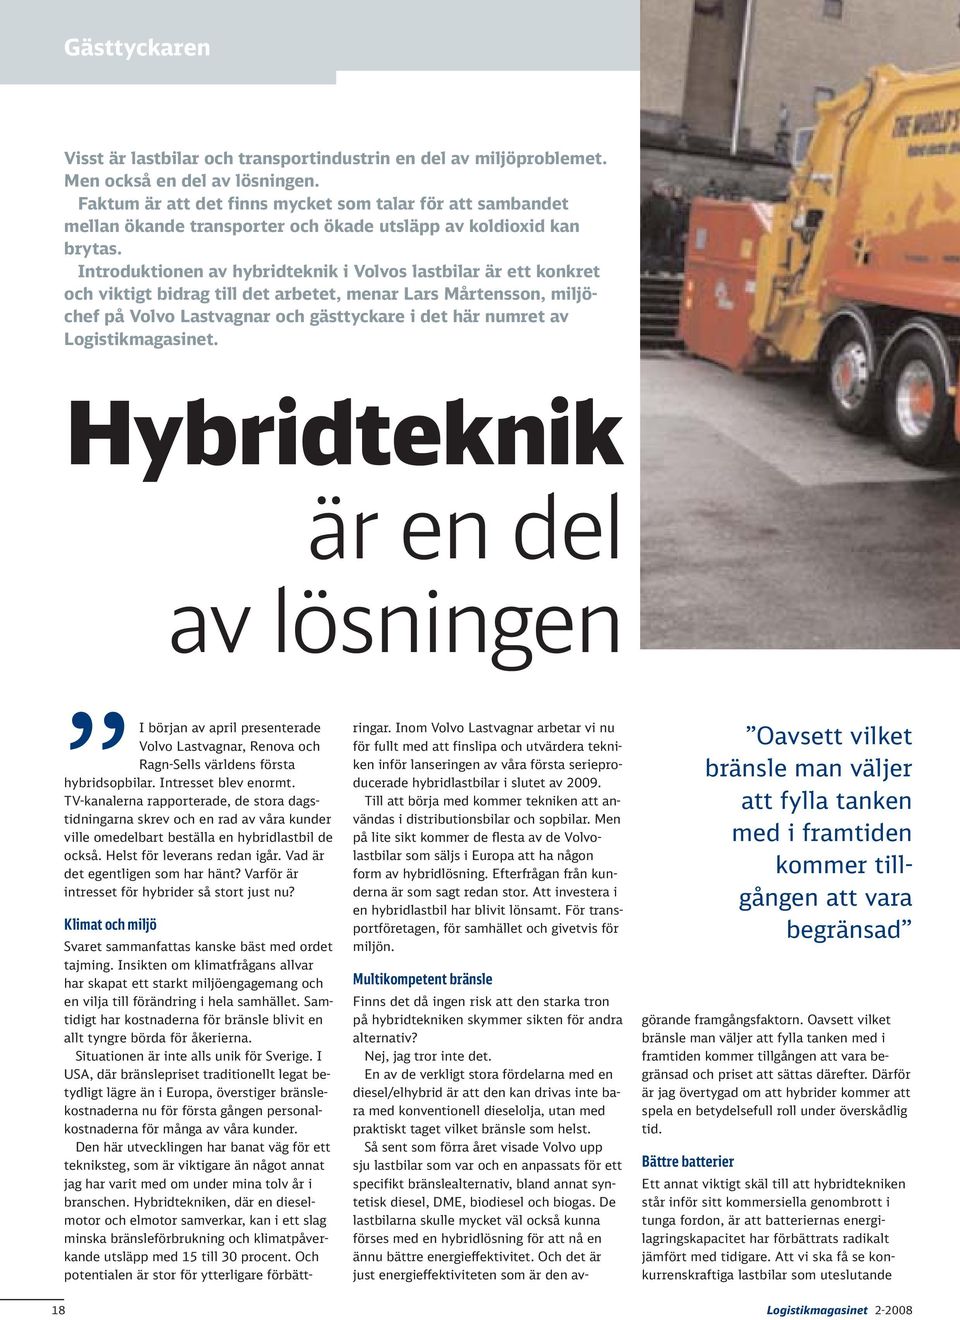 Introduktionen av hybridteknik i Volvos lastbilar är ett konkret och viktigt bidrag till det arbetet, menar Lars Mårtensson, miljöchef på Volvo Lastvagnar och gästtyckare i det här numret av